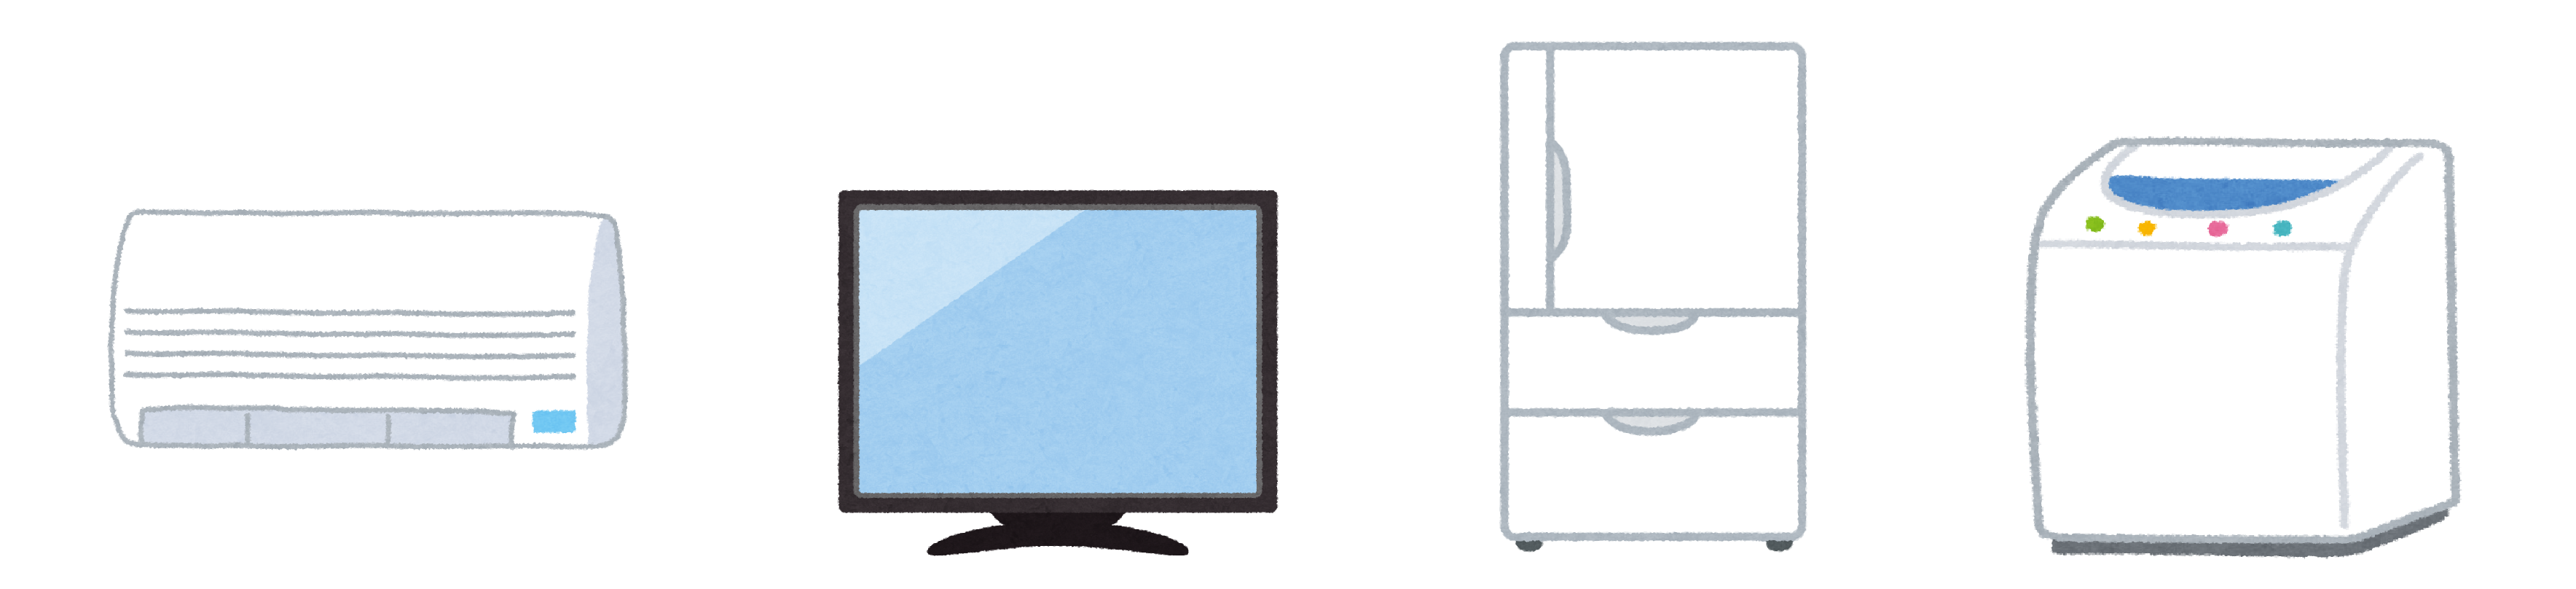 エアコン、テレビ、冷蔵庫、洗濯機のイラスト